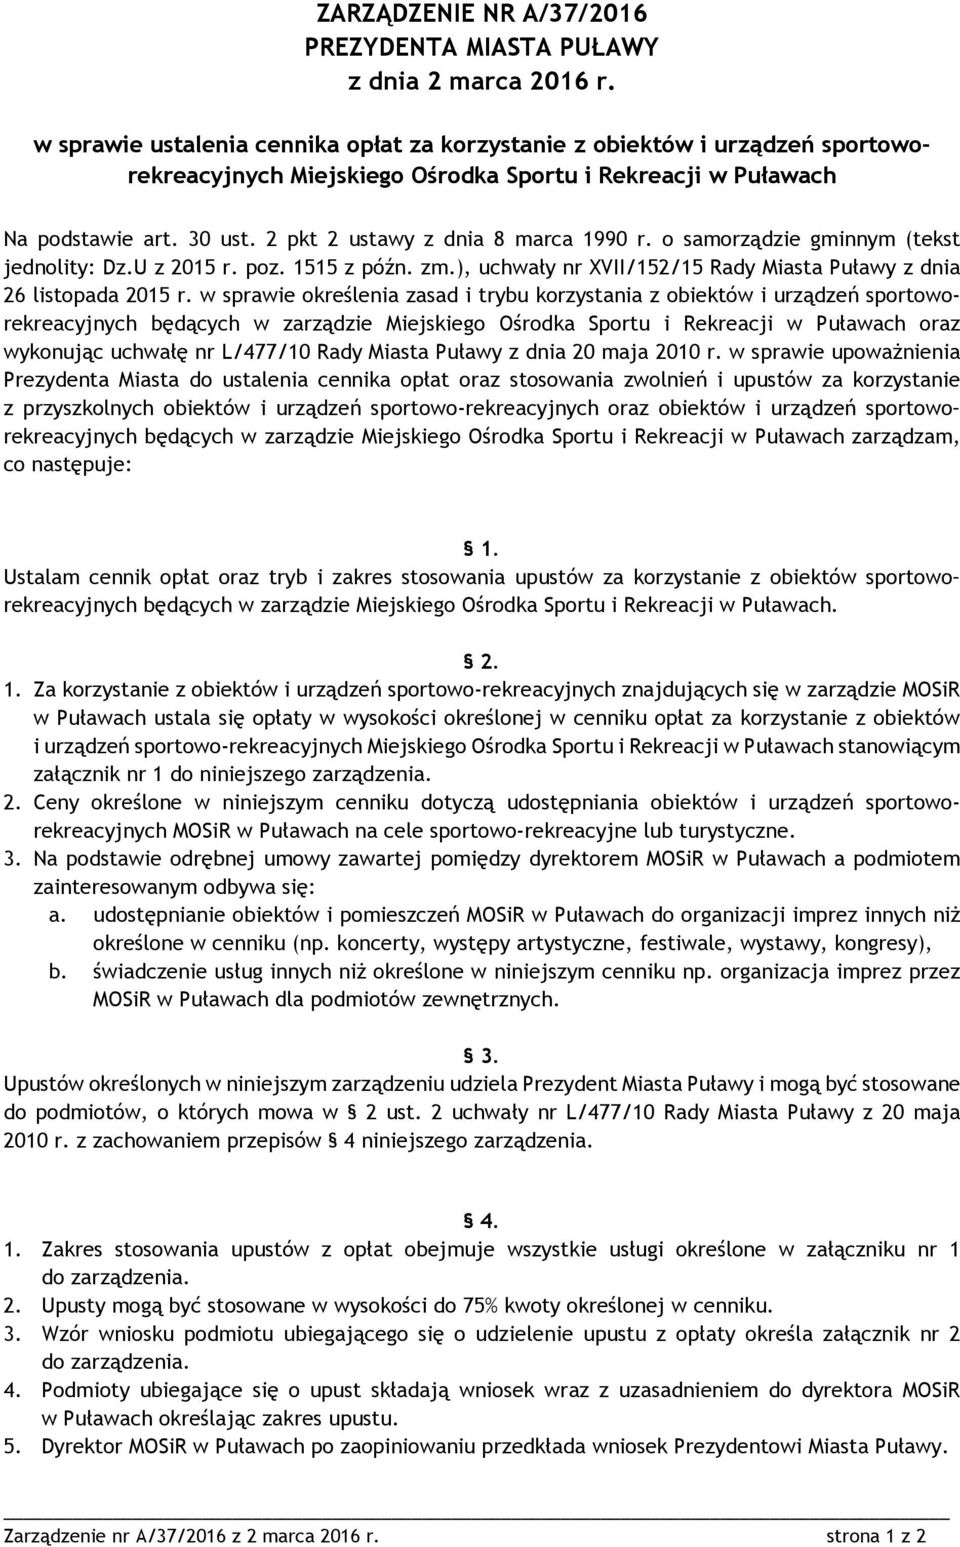 2 pkt 2 ustawy z dnia 8 marca 1990 r. o samorządzie gminnym (tekst jednolity: Dz.U z 2015 r. poz. 1515 z późn. zm.), uchwały nr XVII/152/15 Rady Miasta Puławy z dnia 26 listopada 2015 r.